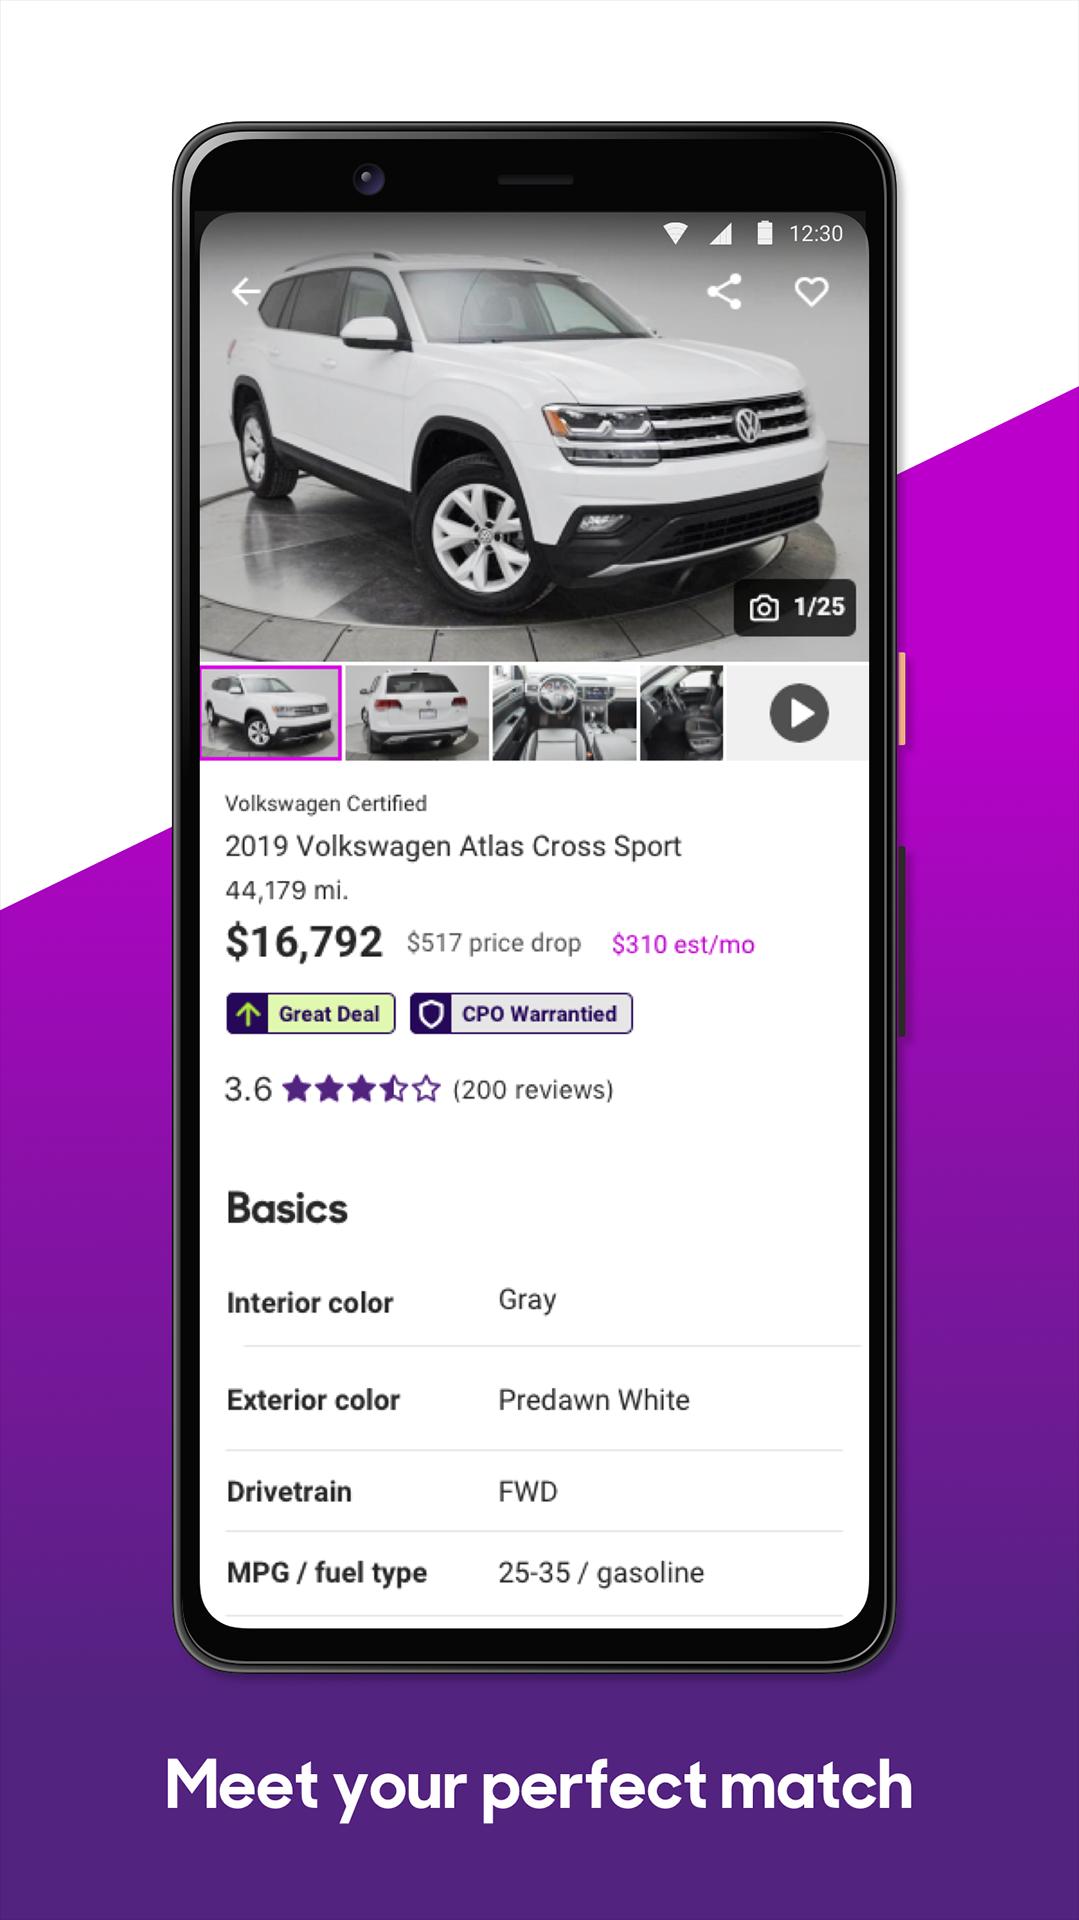 Cars.com – New & Used Vehicles 8.0.0.146 Screenshot 4